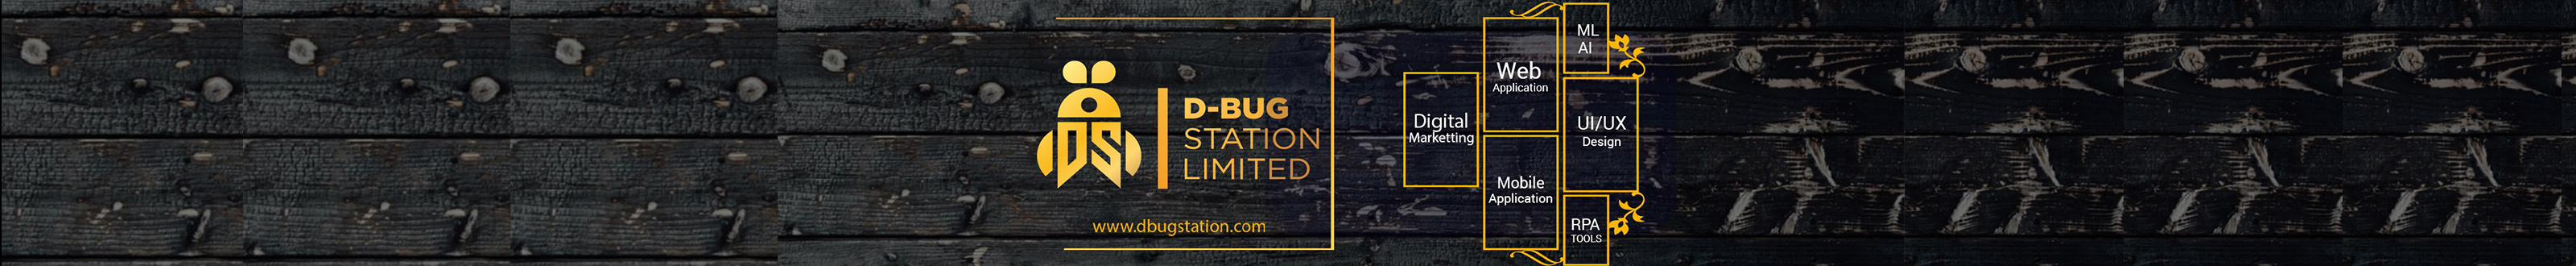 D-bug Station Limited's profile banner